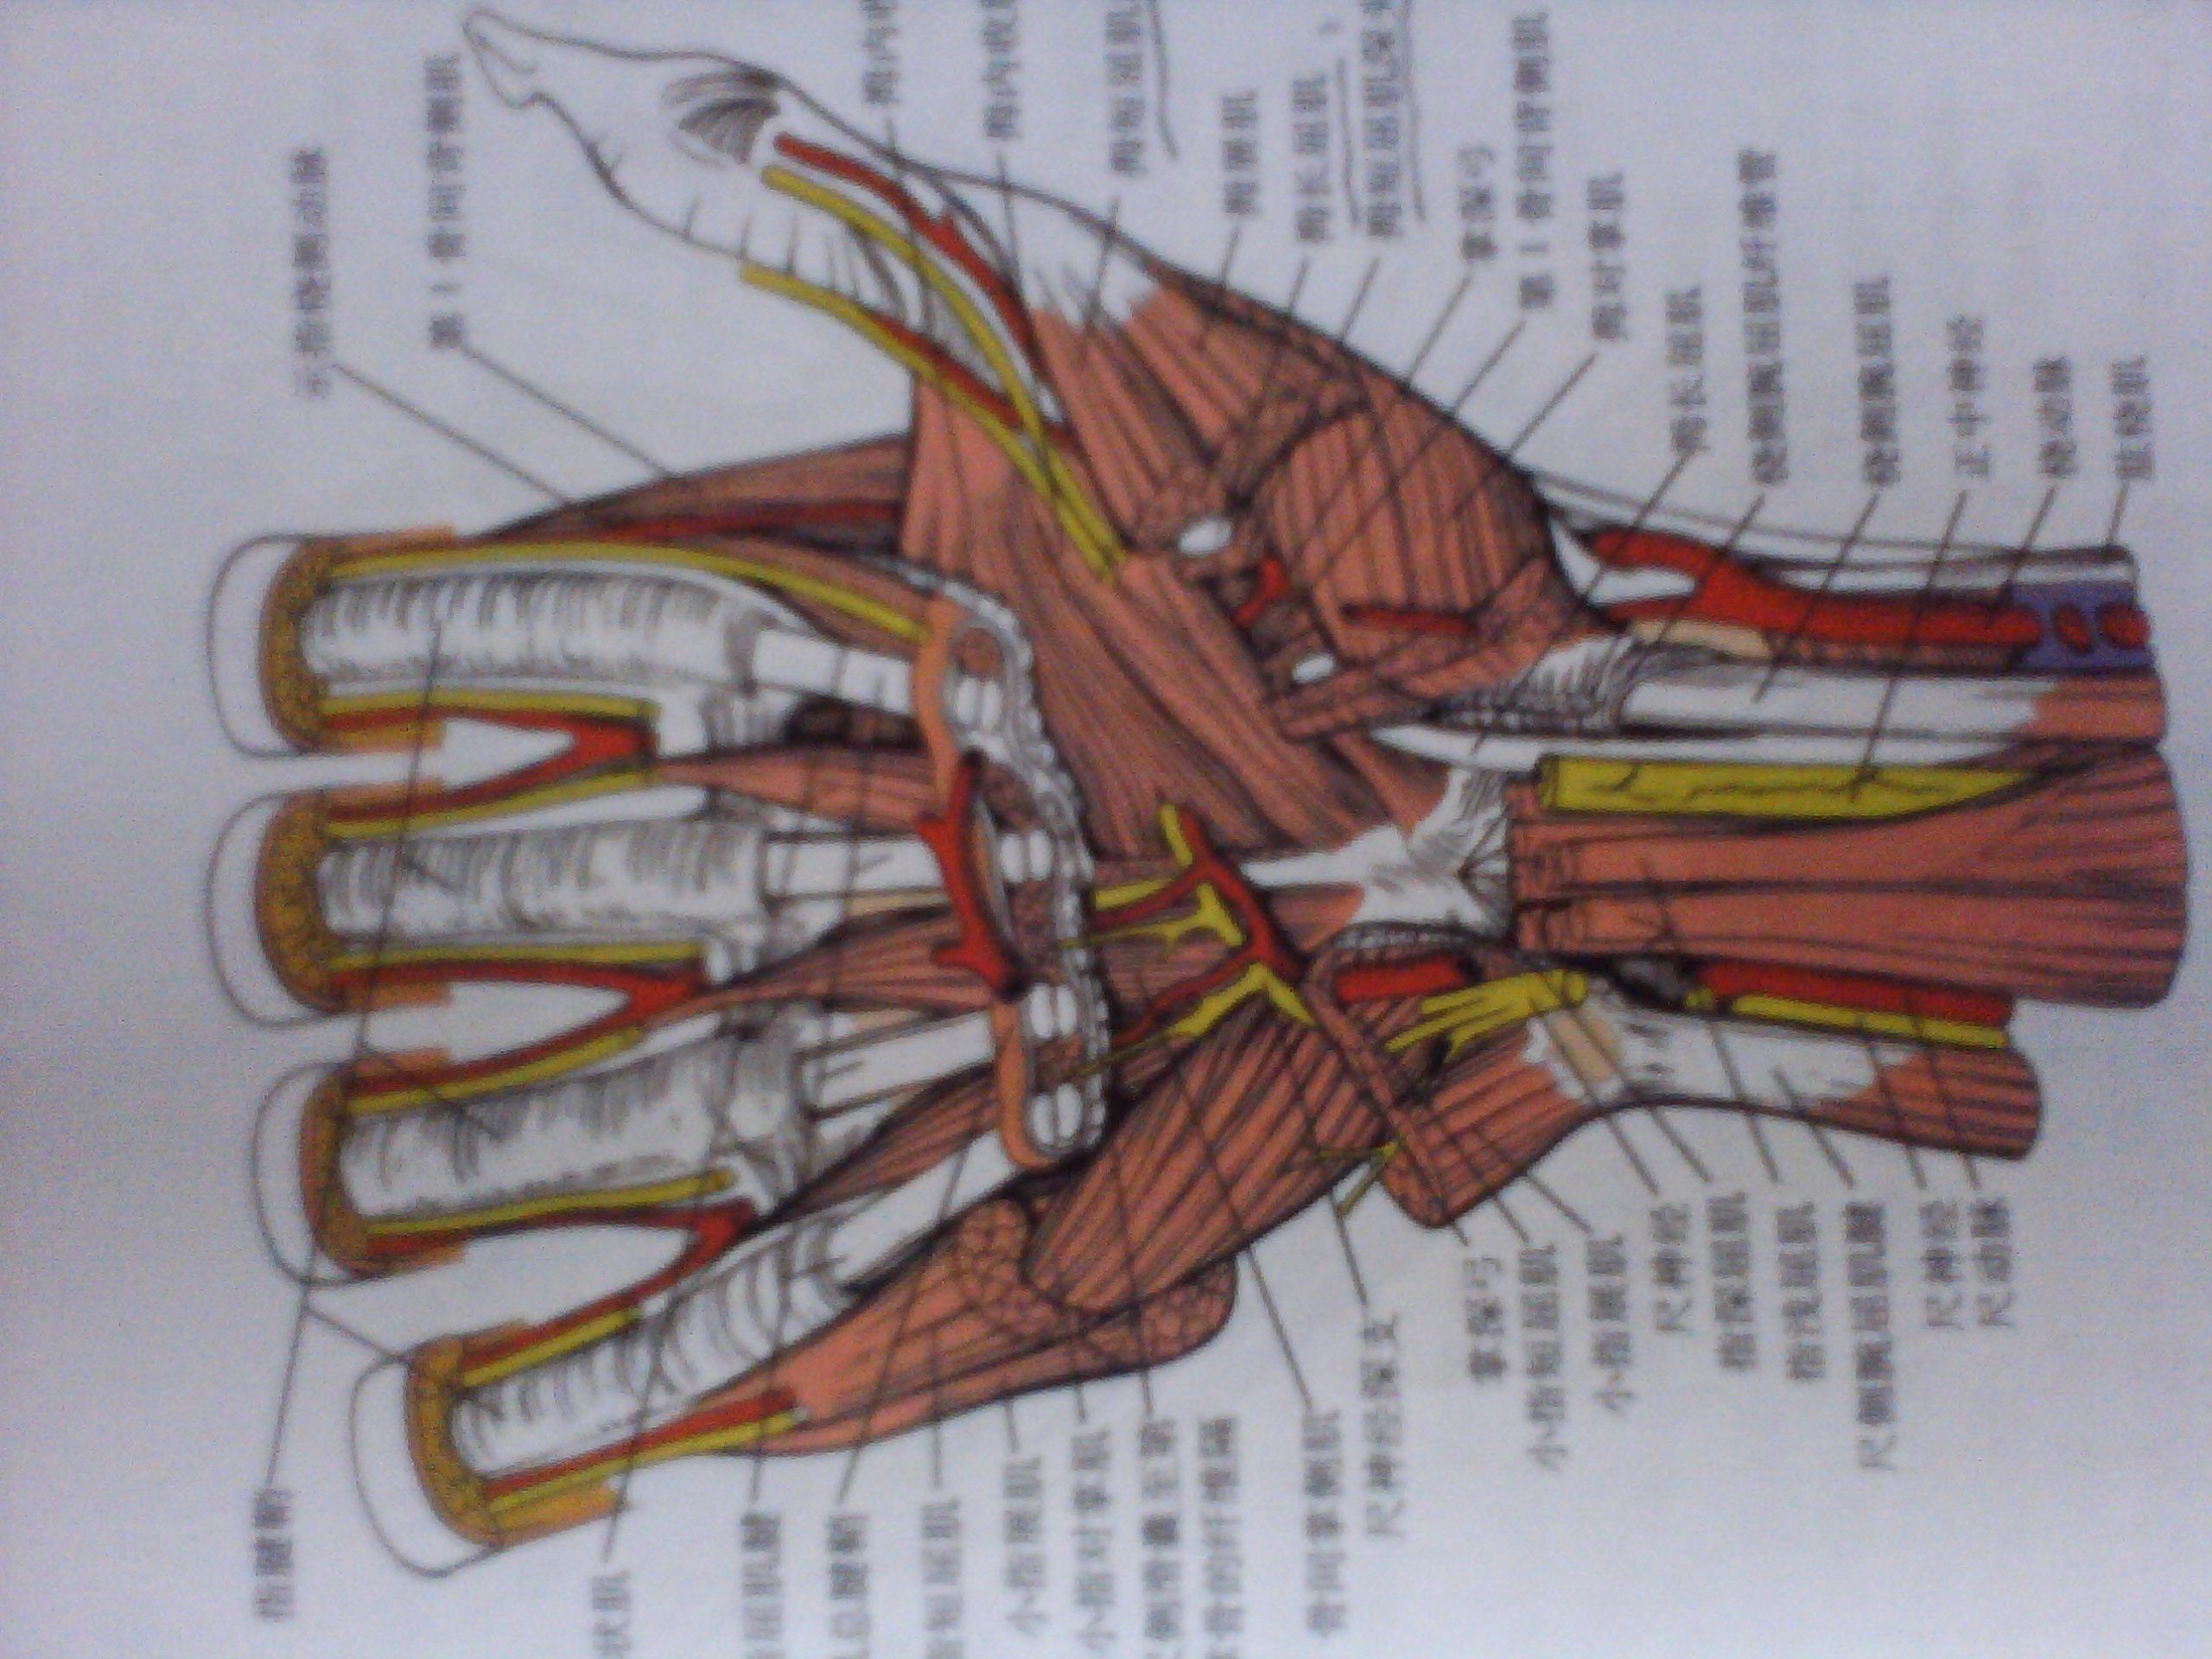 就是图片位置断裂,指浅屈肌腱于腕部上下平行排列与各手指走行方向